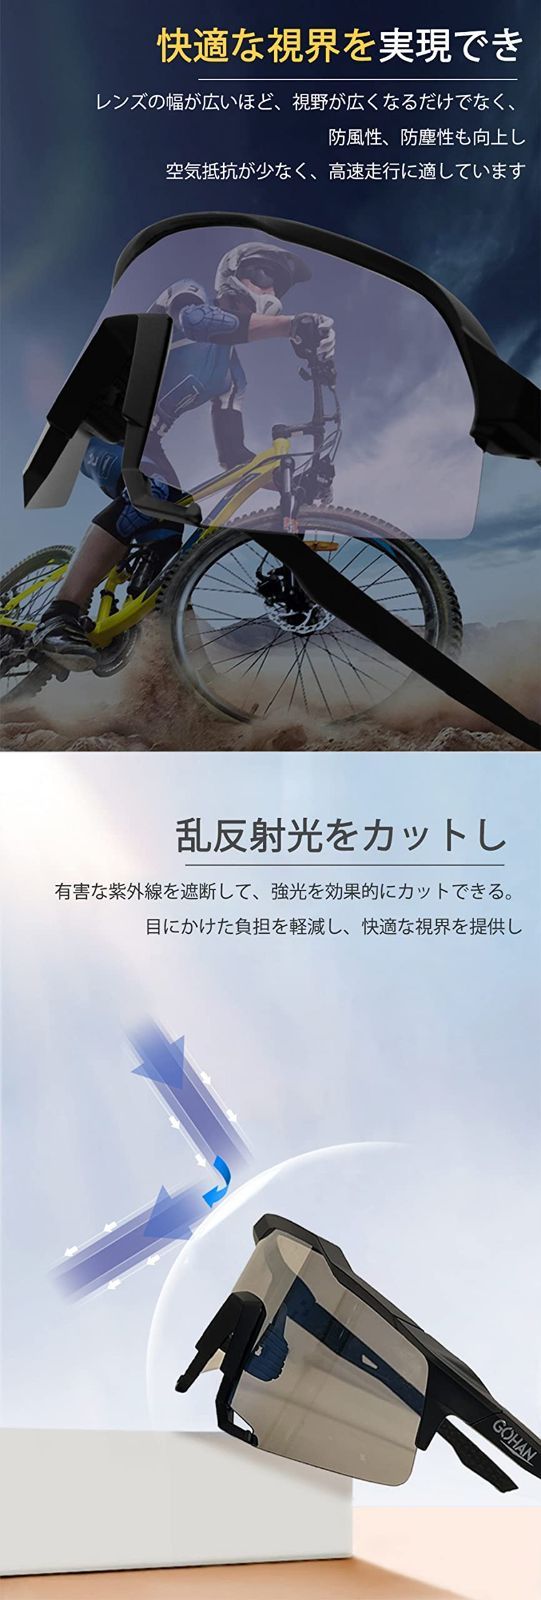 【色: #299ブラック】GOHAN ゴーグル スポーツサングラス 自転車サング